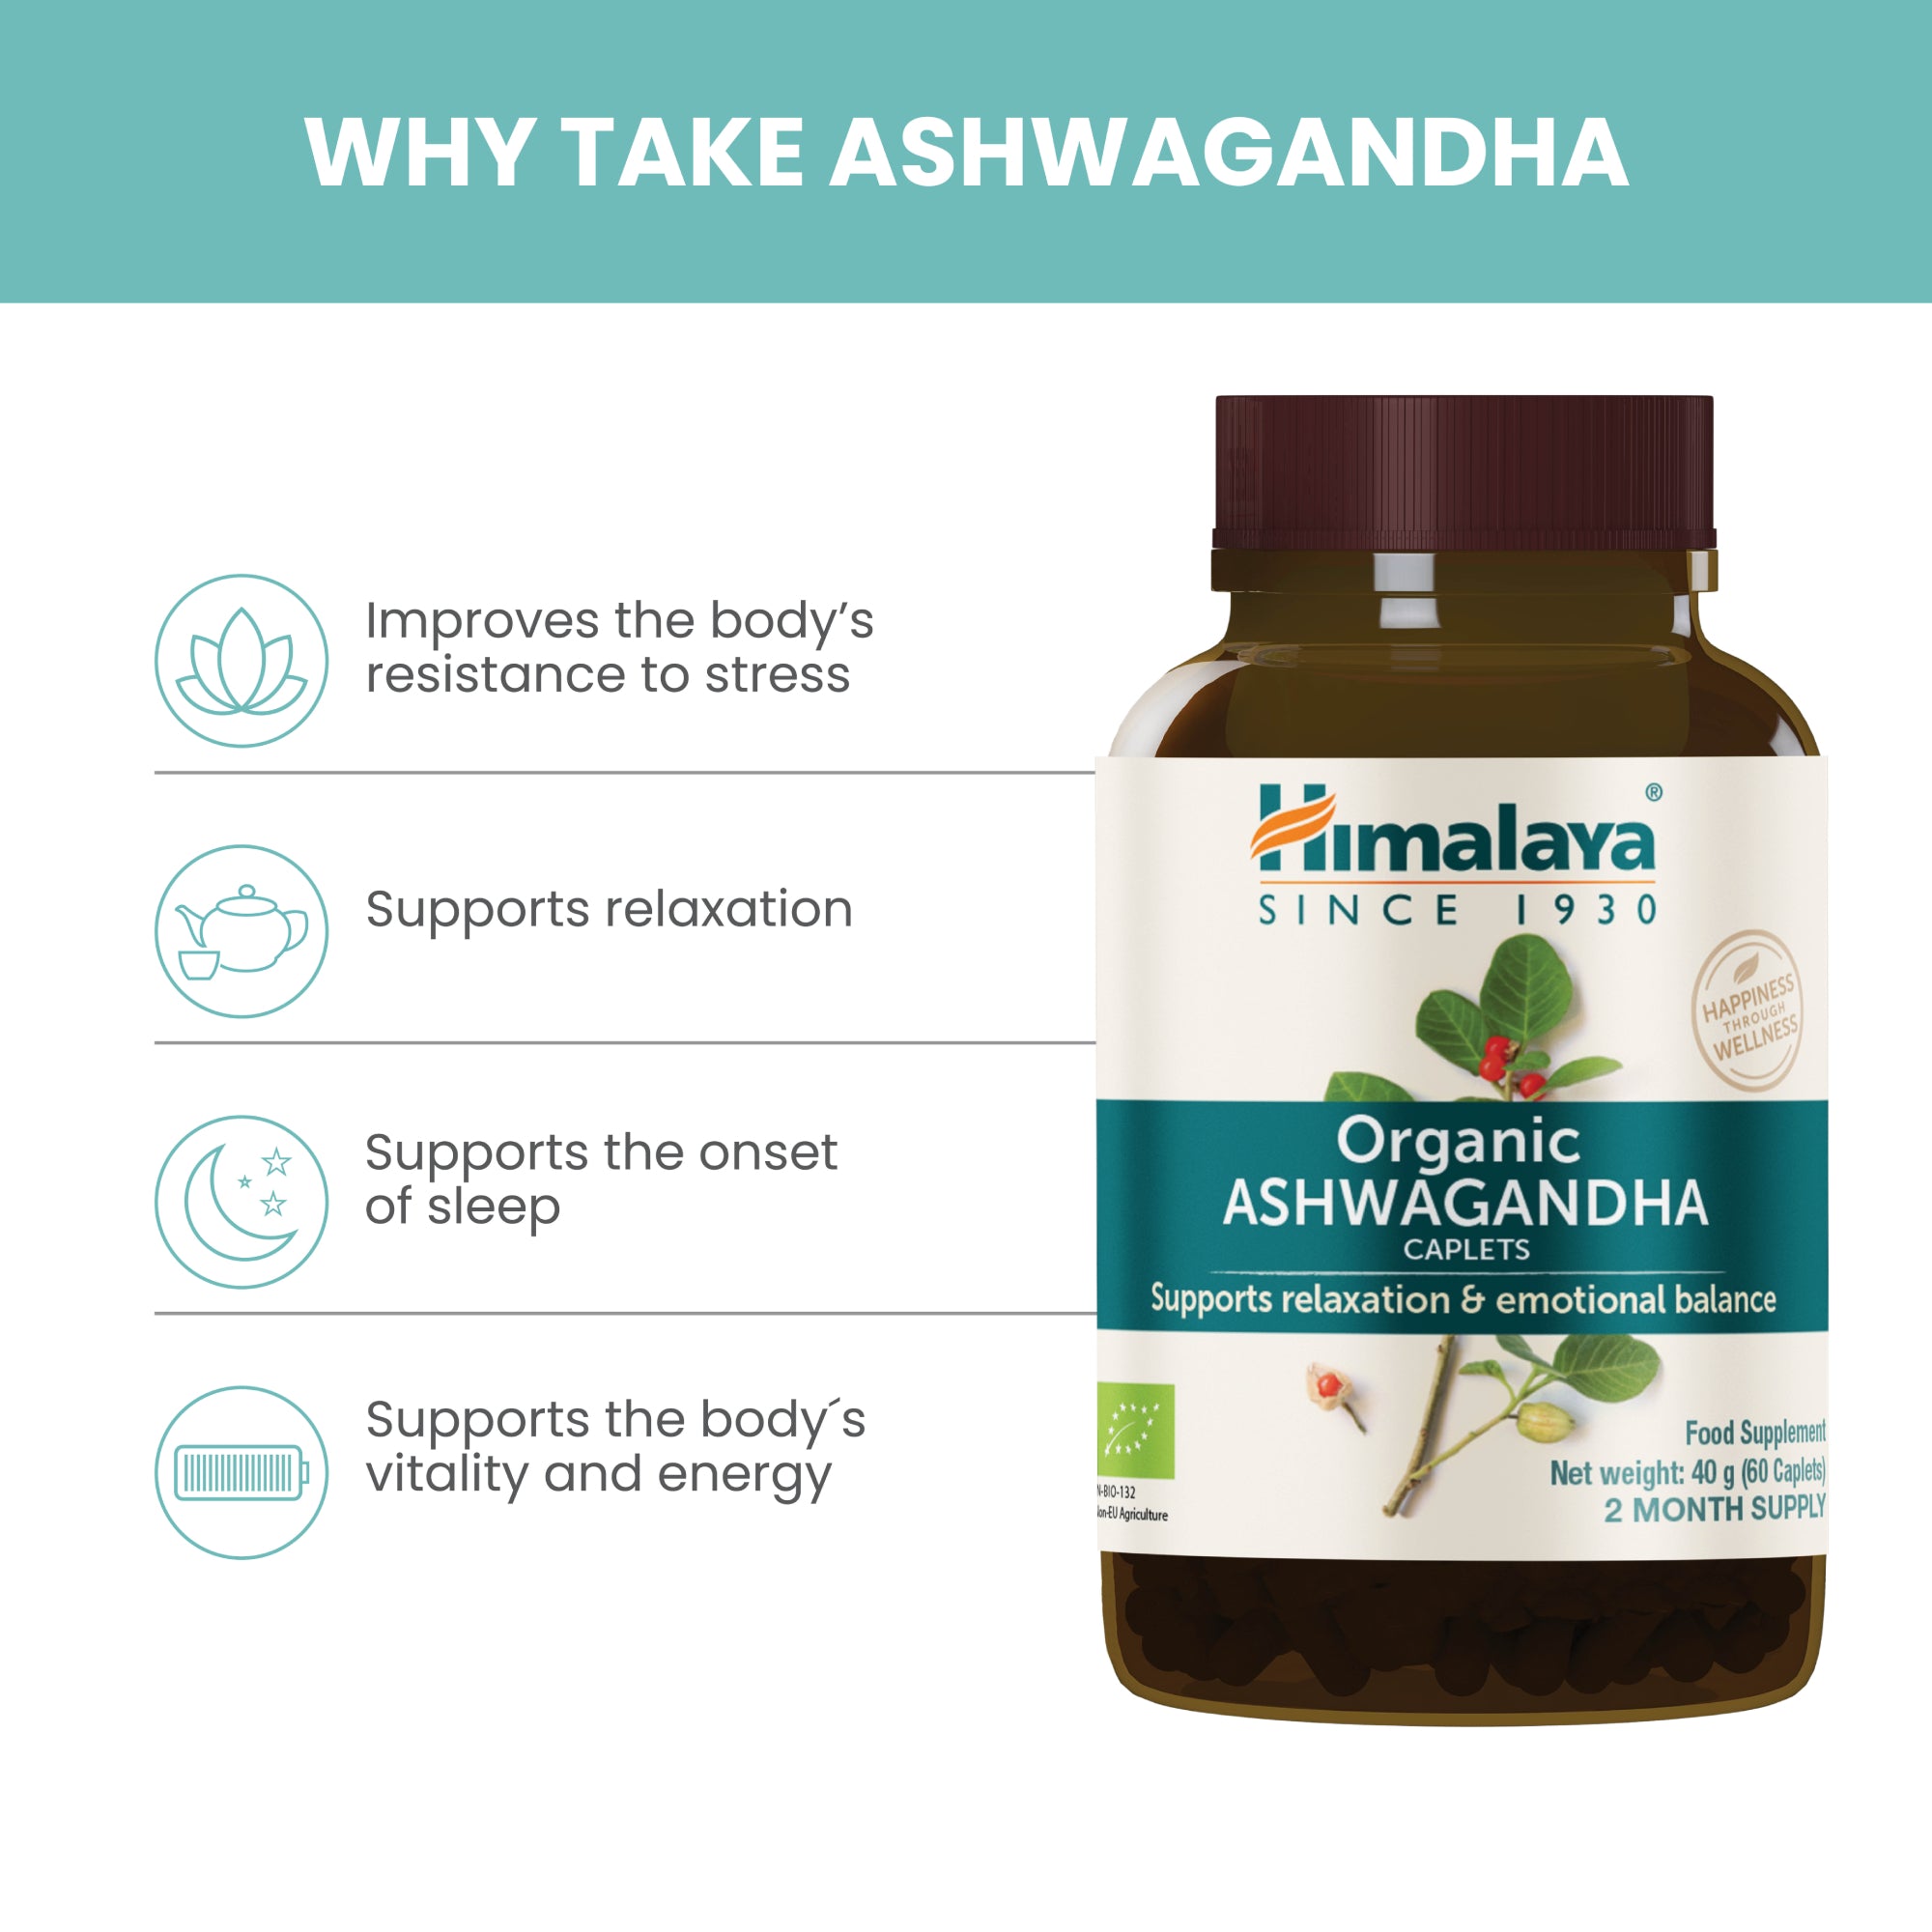 Himalaya Organic Ashwagandha - Why Take Ashwagandha?